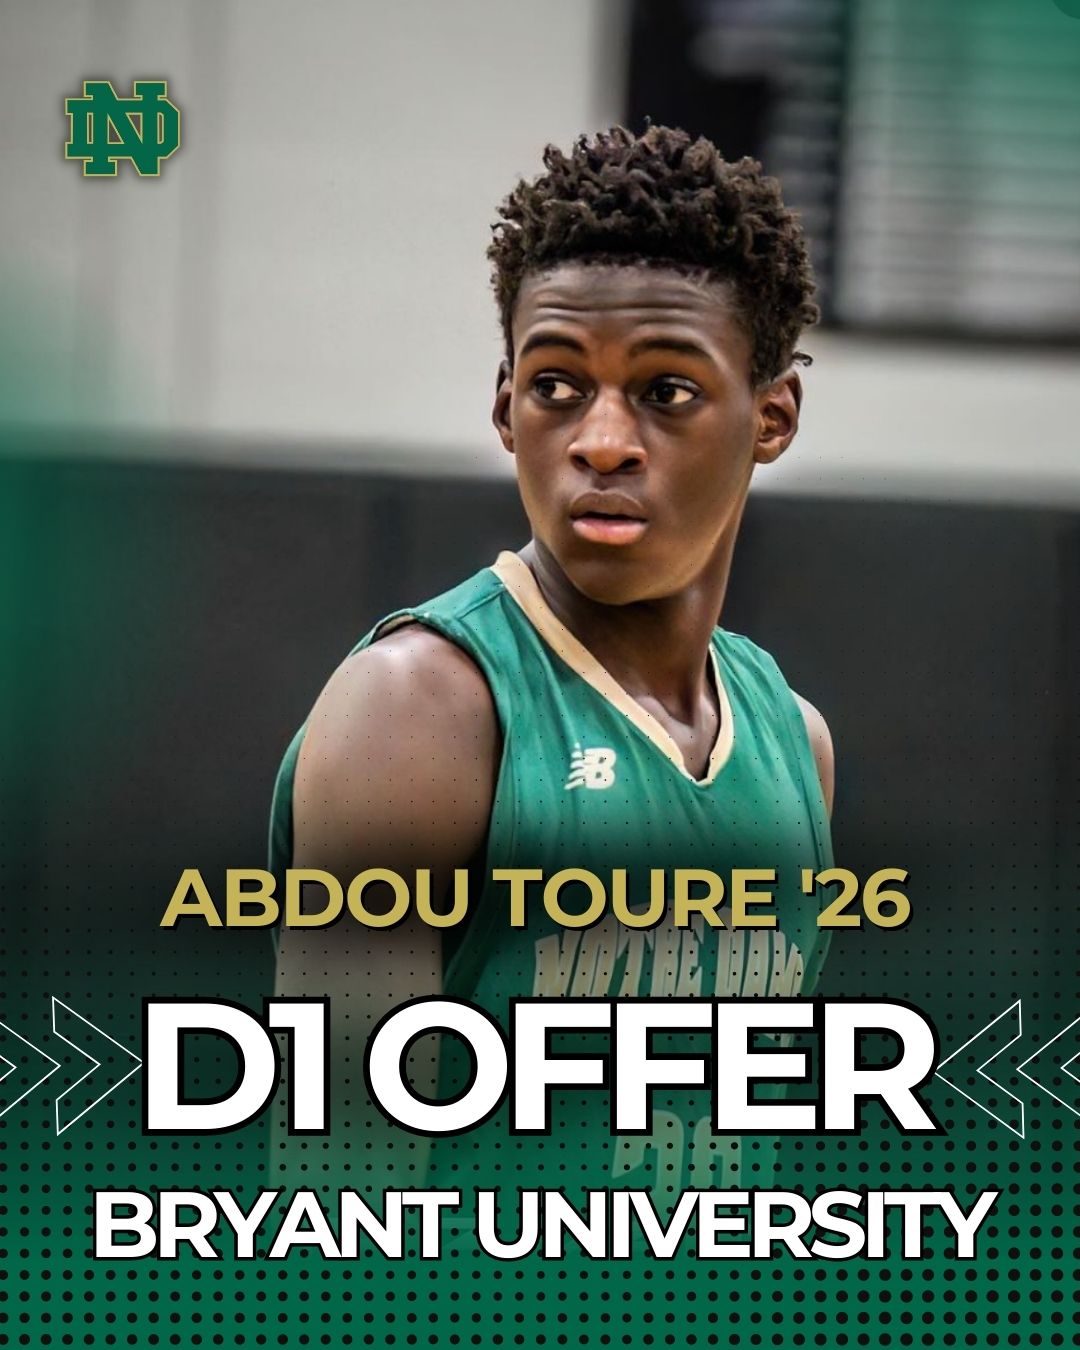 Congratulations Abdou Toure '26!